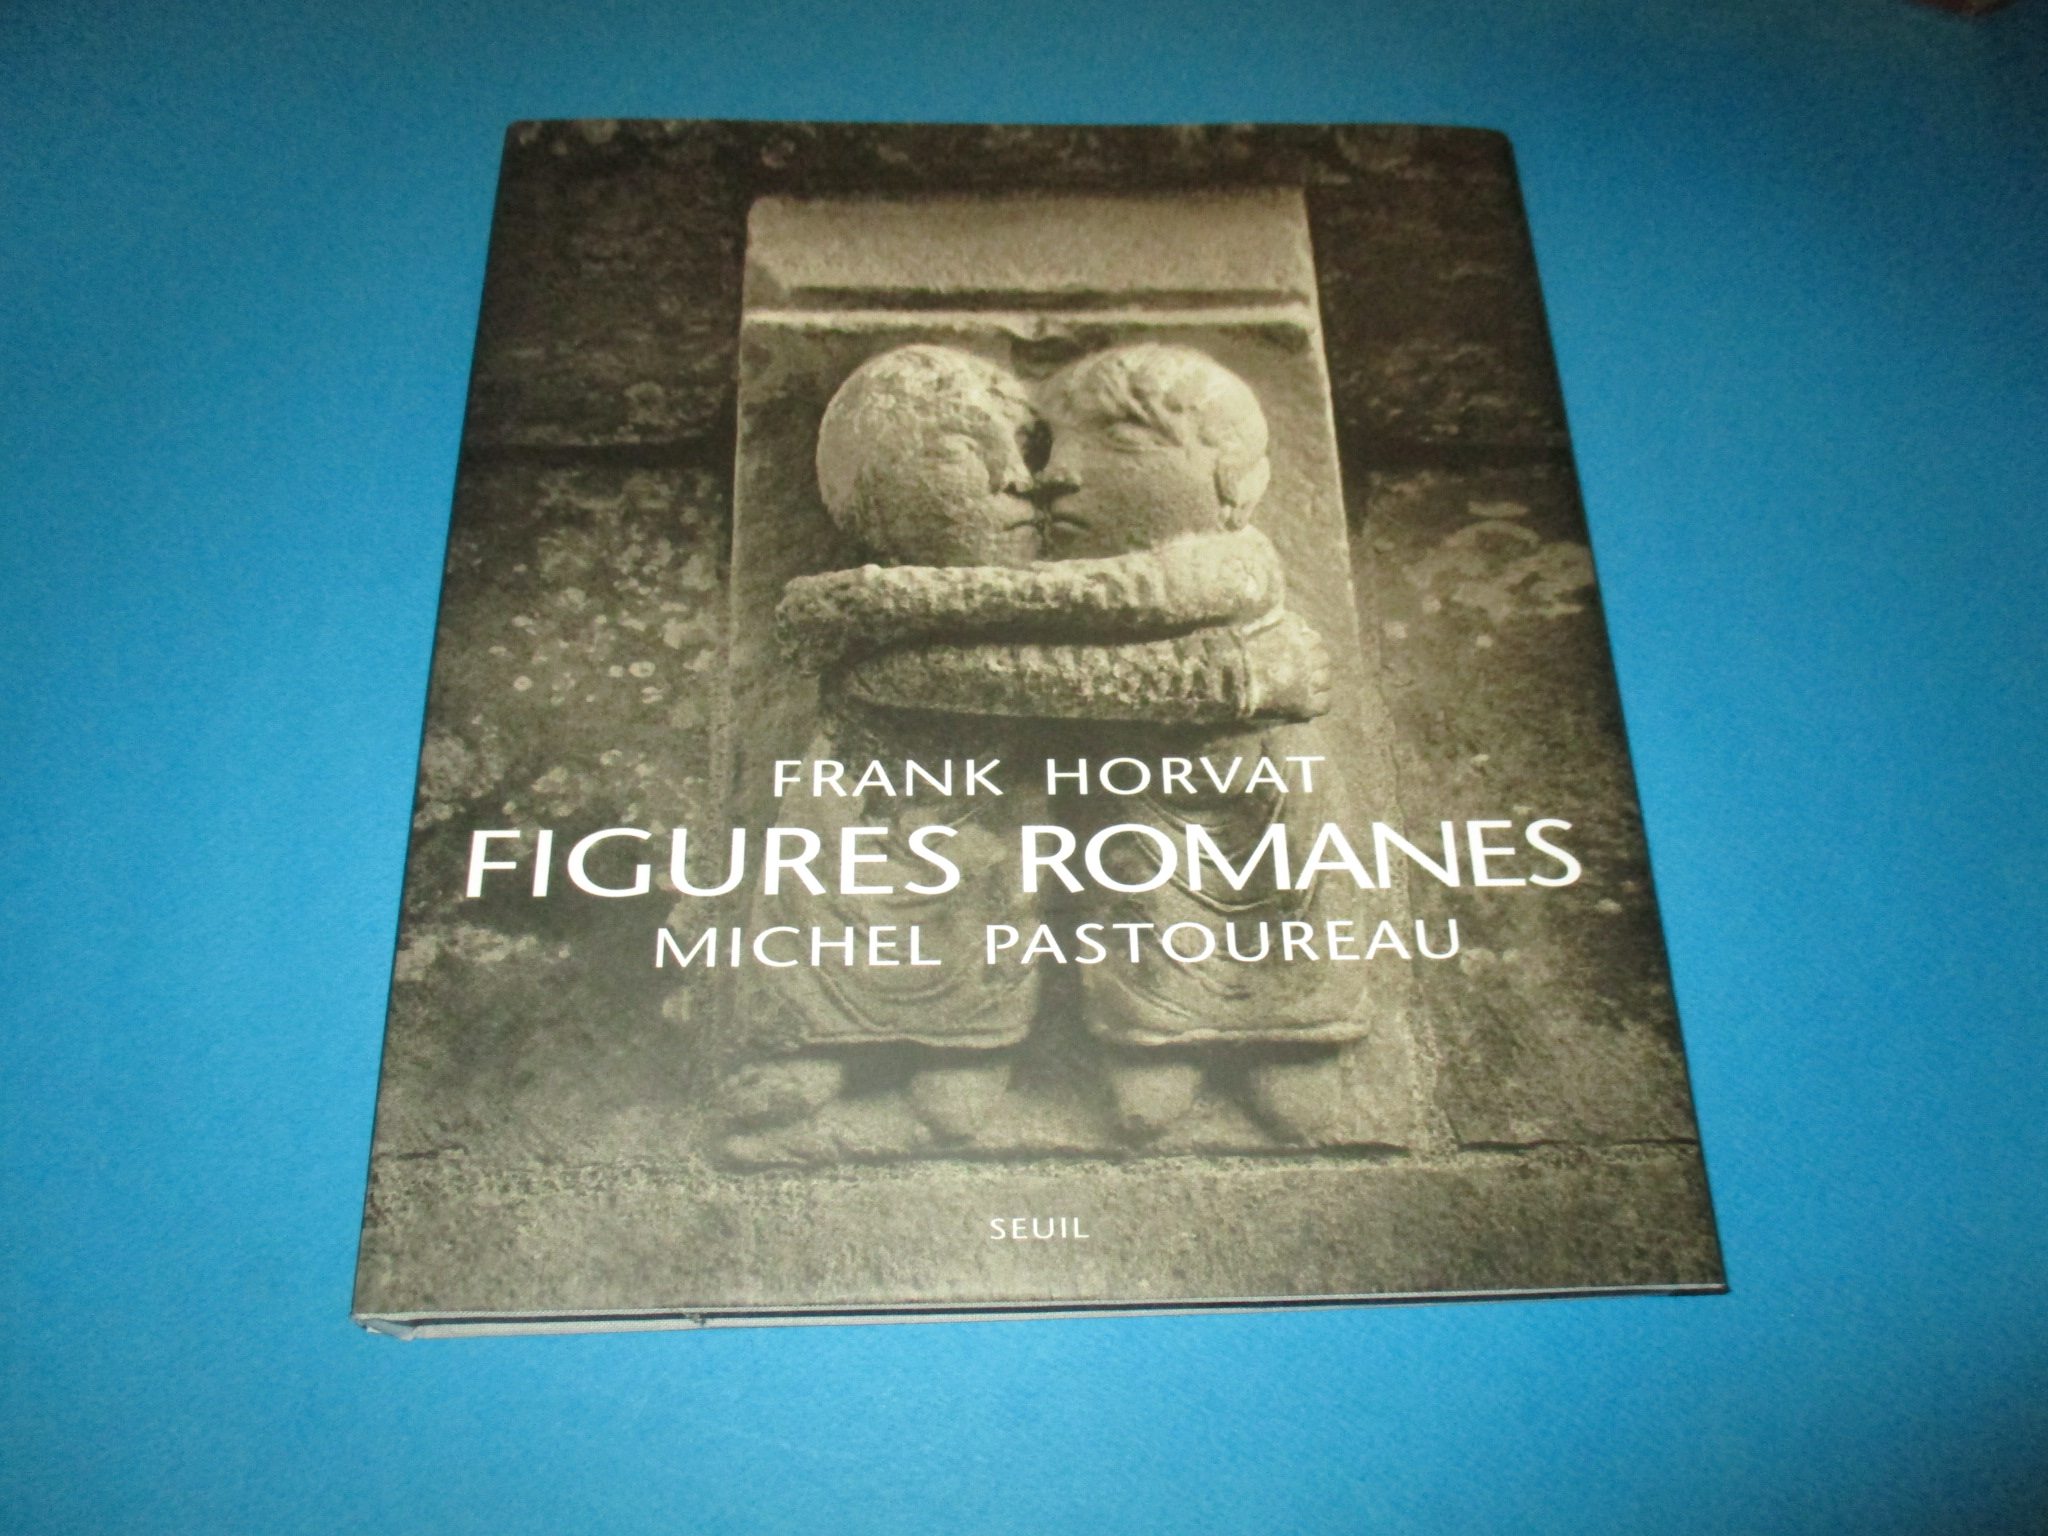 Figures Romanes, Frank Horvat, Michel Pastoureau, architecture Eglises & photographies, Seuil